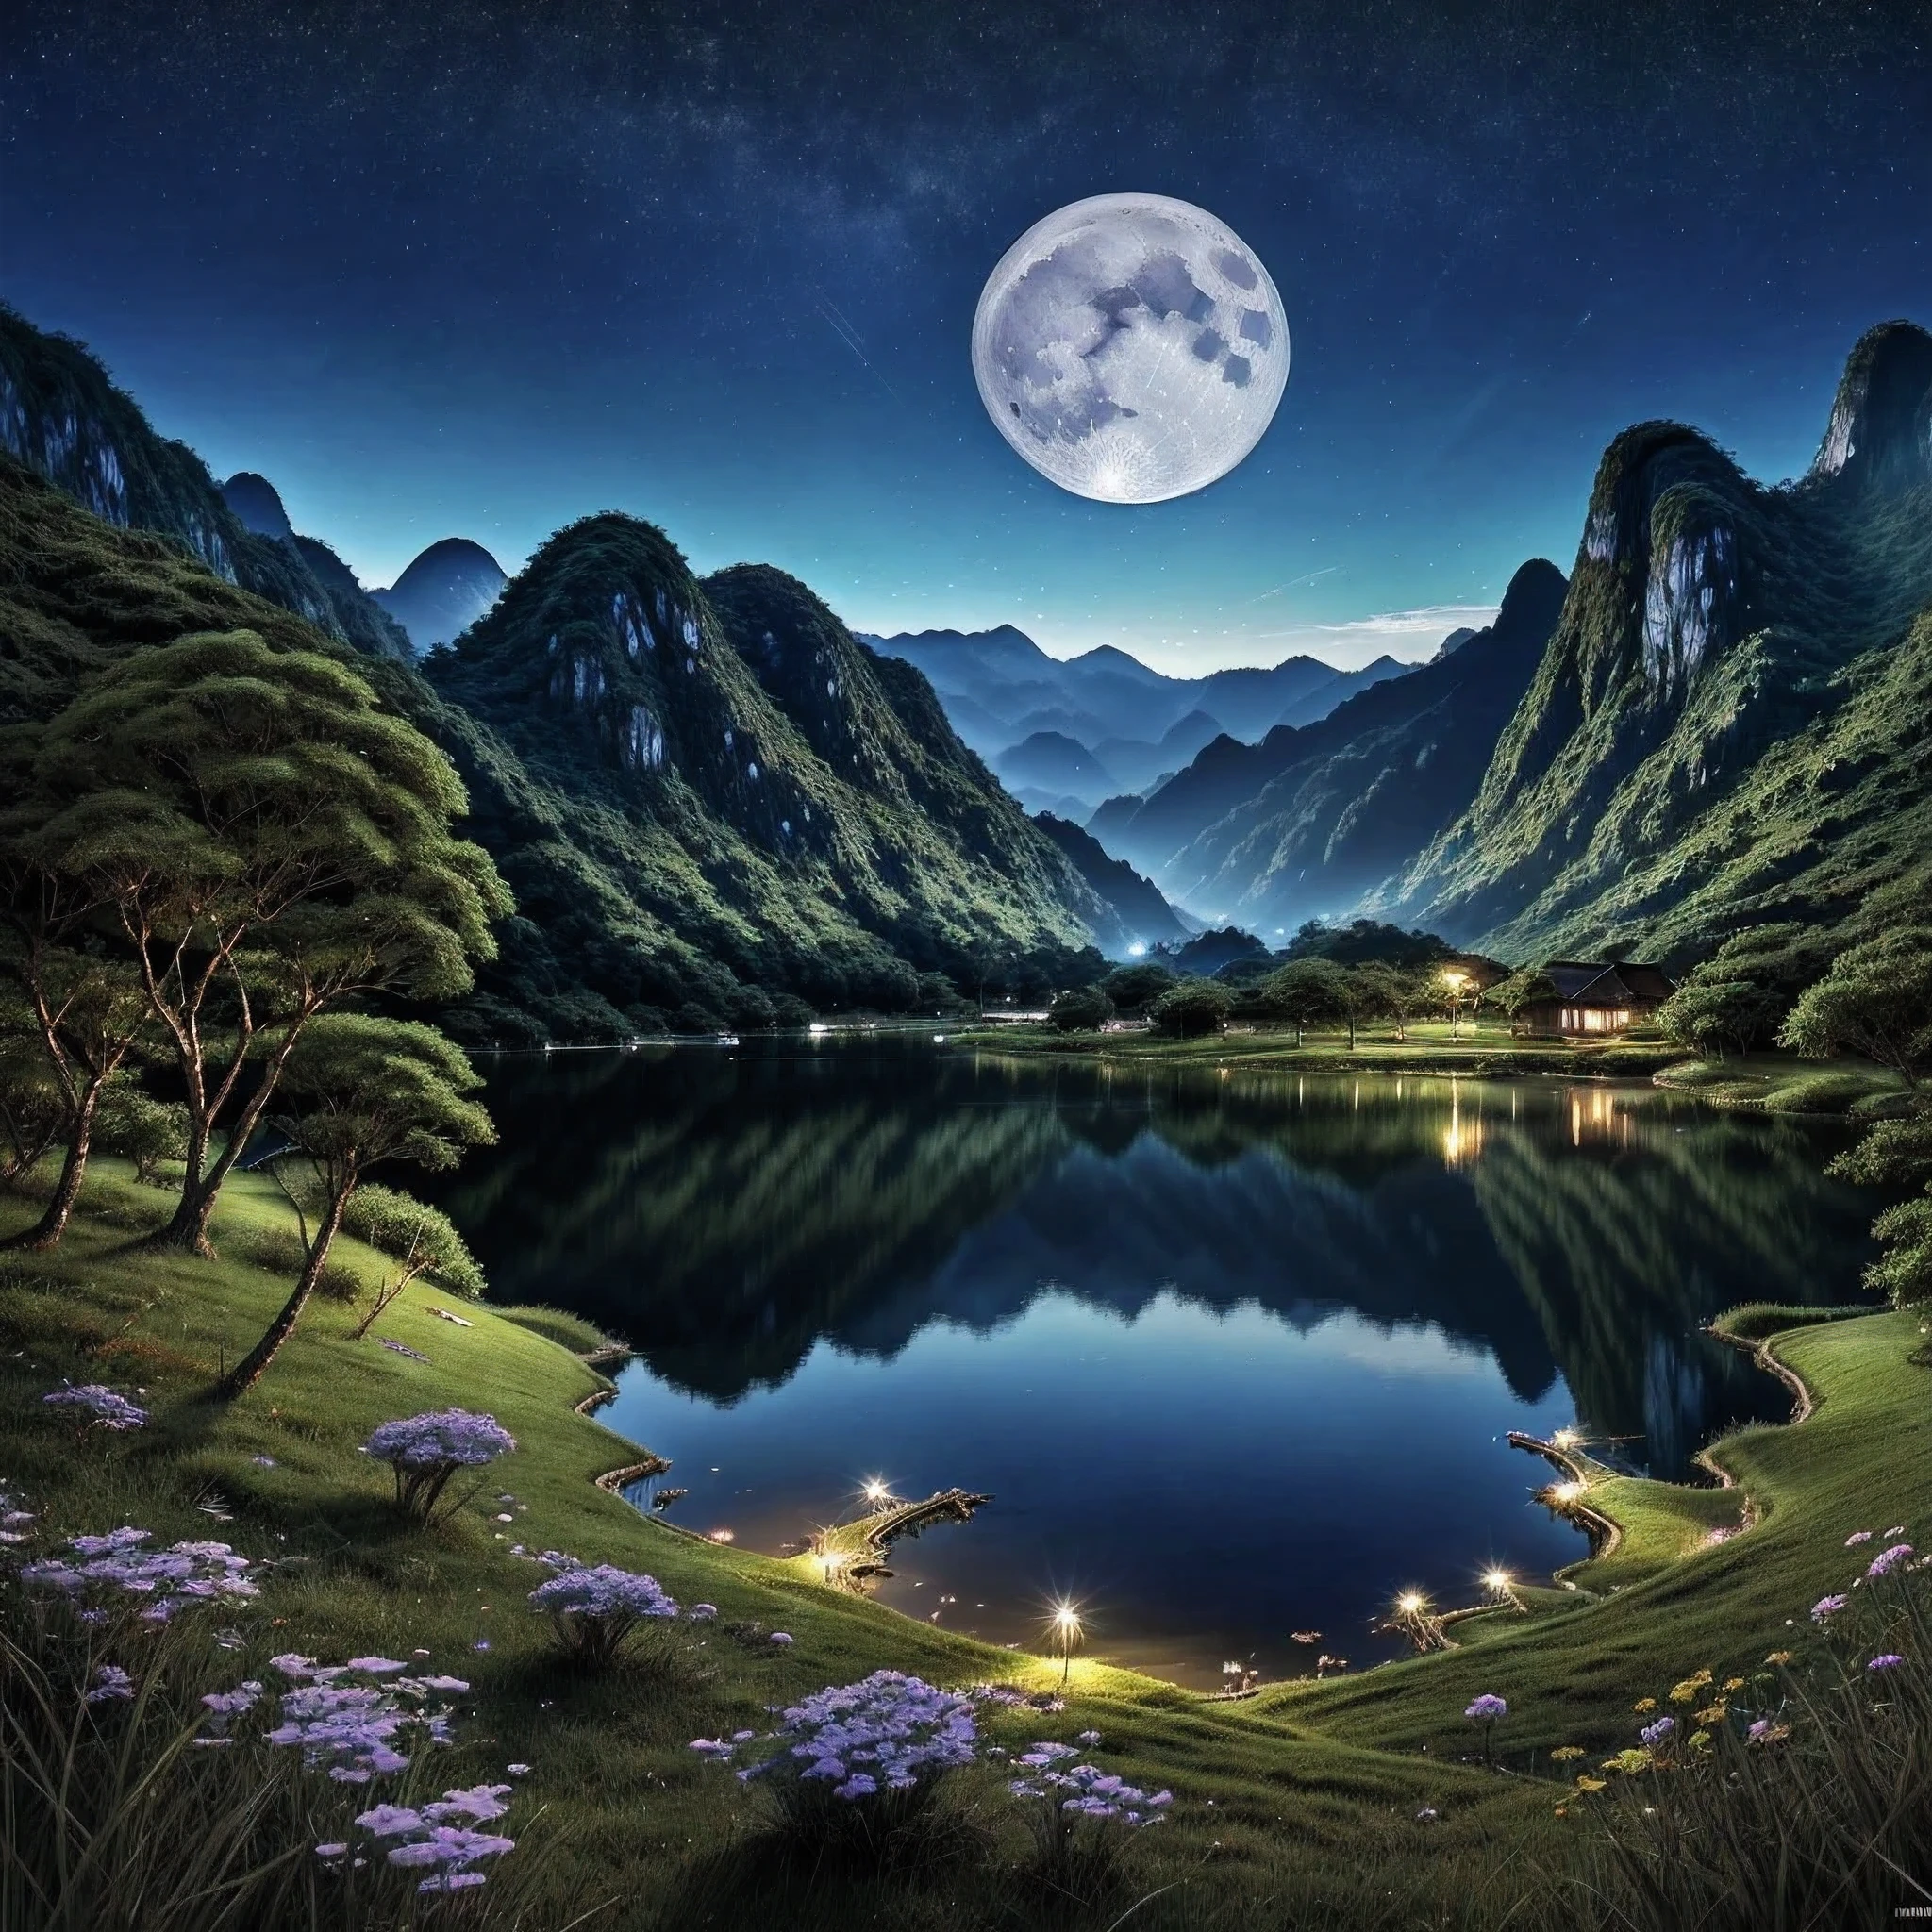 Ночная сцена с какой-то домашней азиаткой, Вьетнам, Вьетнам, Хазянг, луна, озеро на переднем плане, спокойная ночь, зеленый и синий, цифровая иллюстрация, Высокодетализированное цифровое искусство 4K, ночной пейзаж, Аниме Арт Обои 4k, аниме арт обои 4 k, Детализированное цифровое искусство 4k, ночной пейзаж природы, аниме арт обои 8 k, фоновое изображение, красивое искусство uhd 4k, 4k HD иллюстративные обои